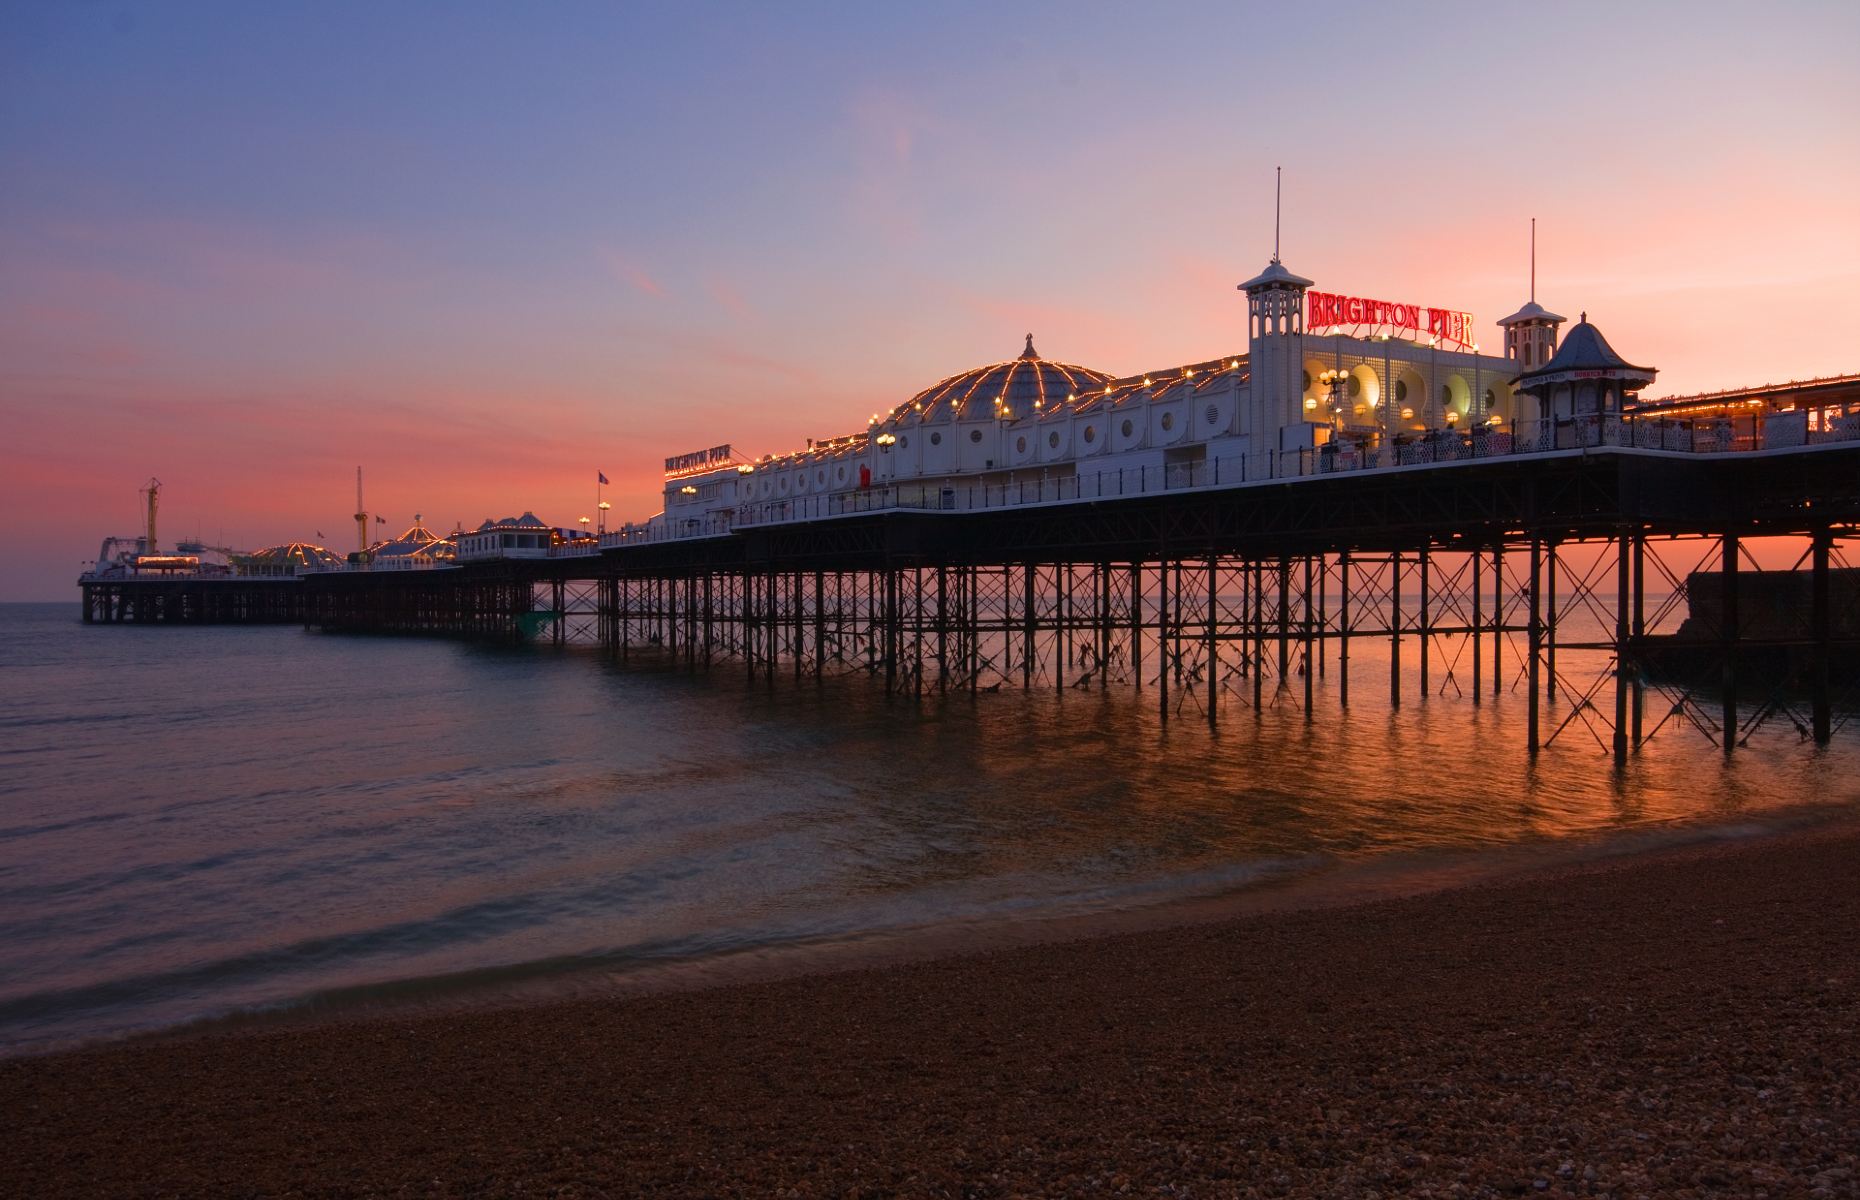 Brighton pier (Scotshot/Shutterstock)